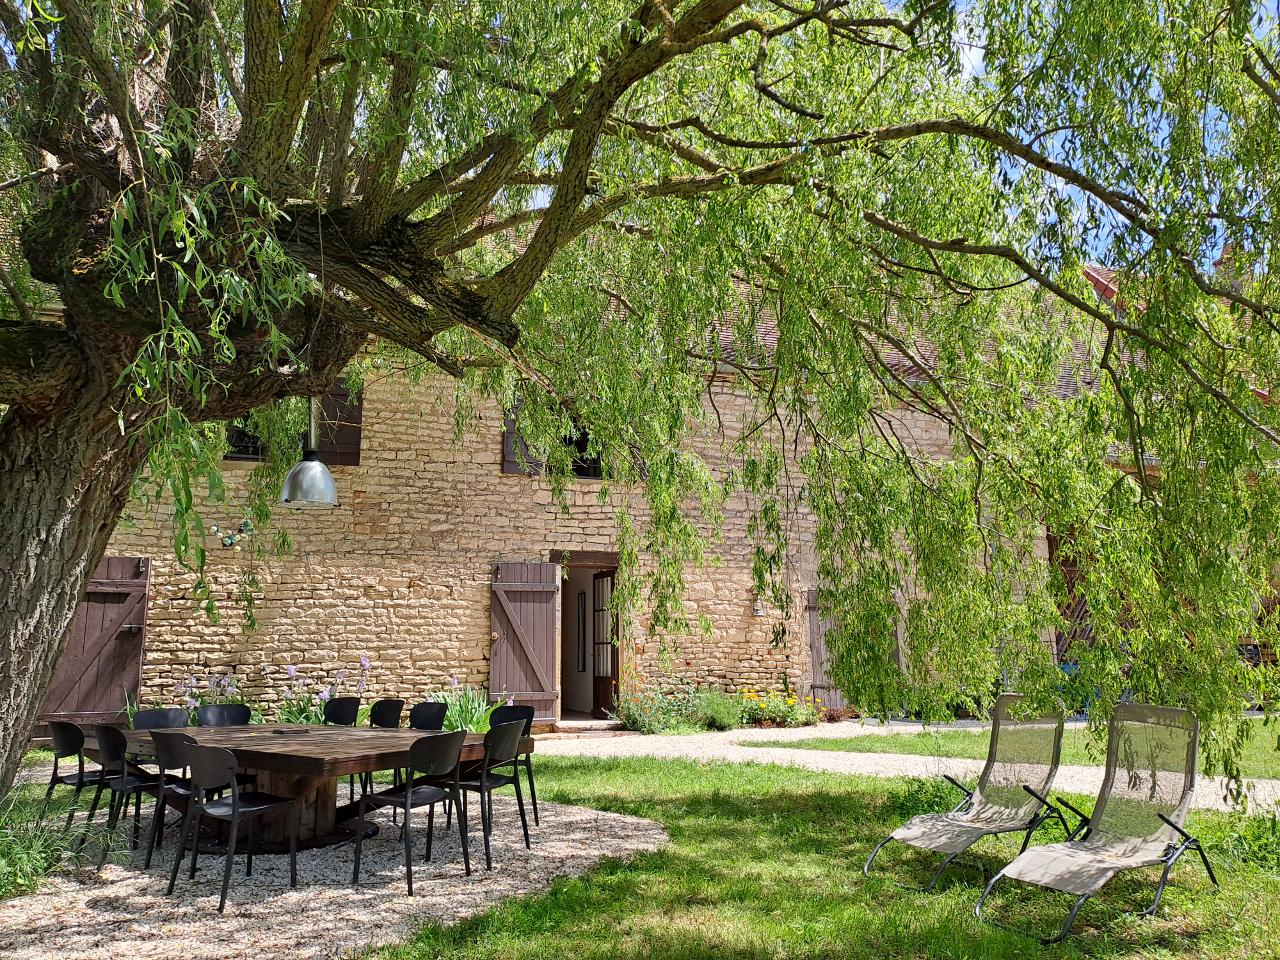 Hôte GreenGo: Gîte de campagne "La Chavoche" situé en lisière de bois et à proximité d’une rivière - Bourgogne - Image 4